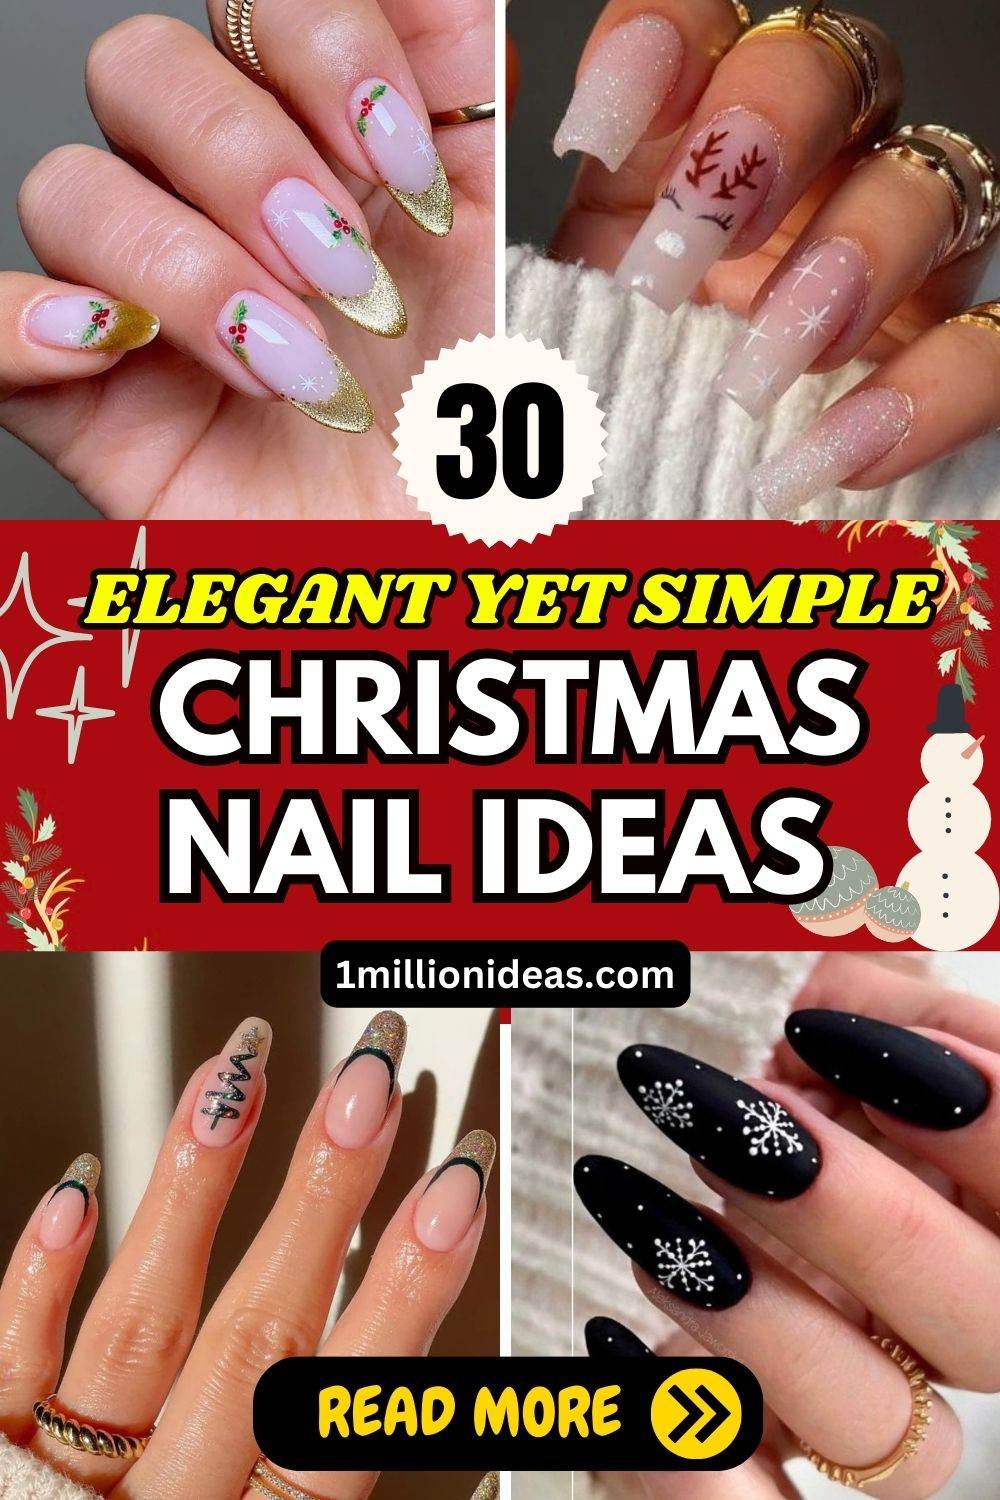 30 Elegant Yet Simple Christmas Nail Ideas For This Festive Season - 37